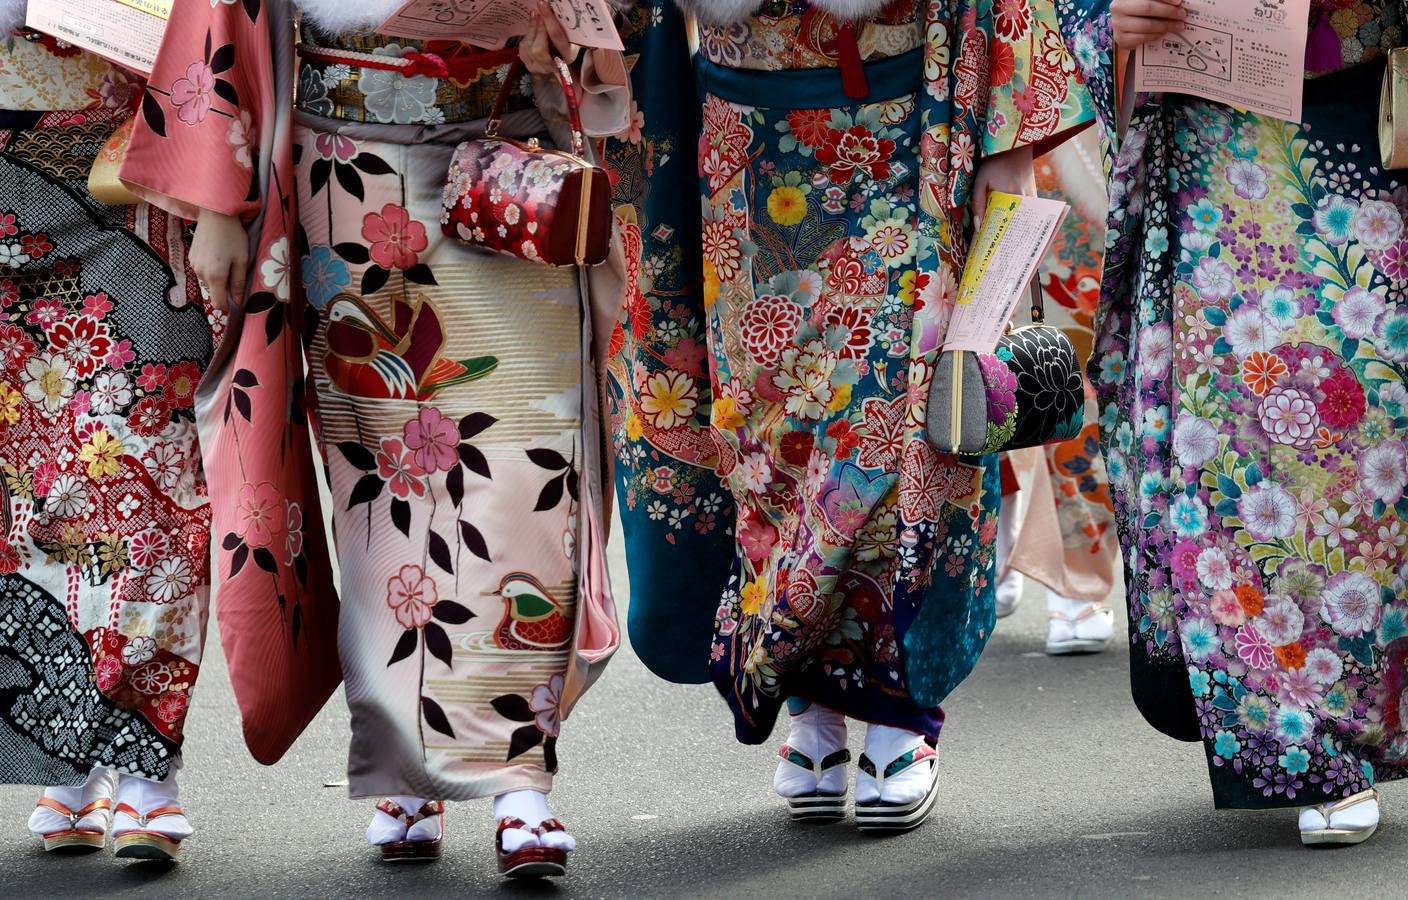 Mujeres japonesas vestidas con kimonos celebran la 'Ceremonia del Día de la mayoría de edad' en un parque de atracciones en Tokio, Japón.